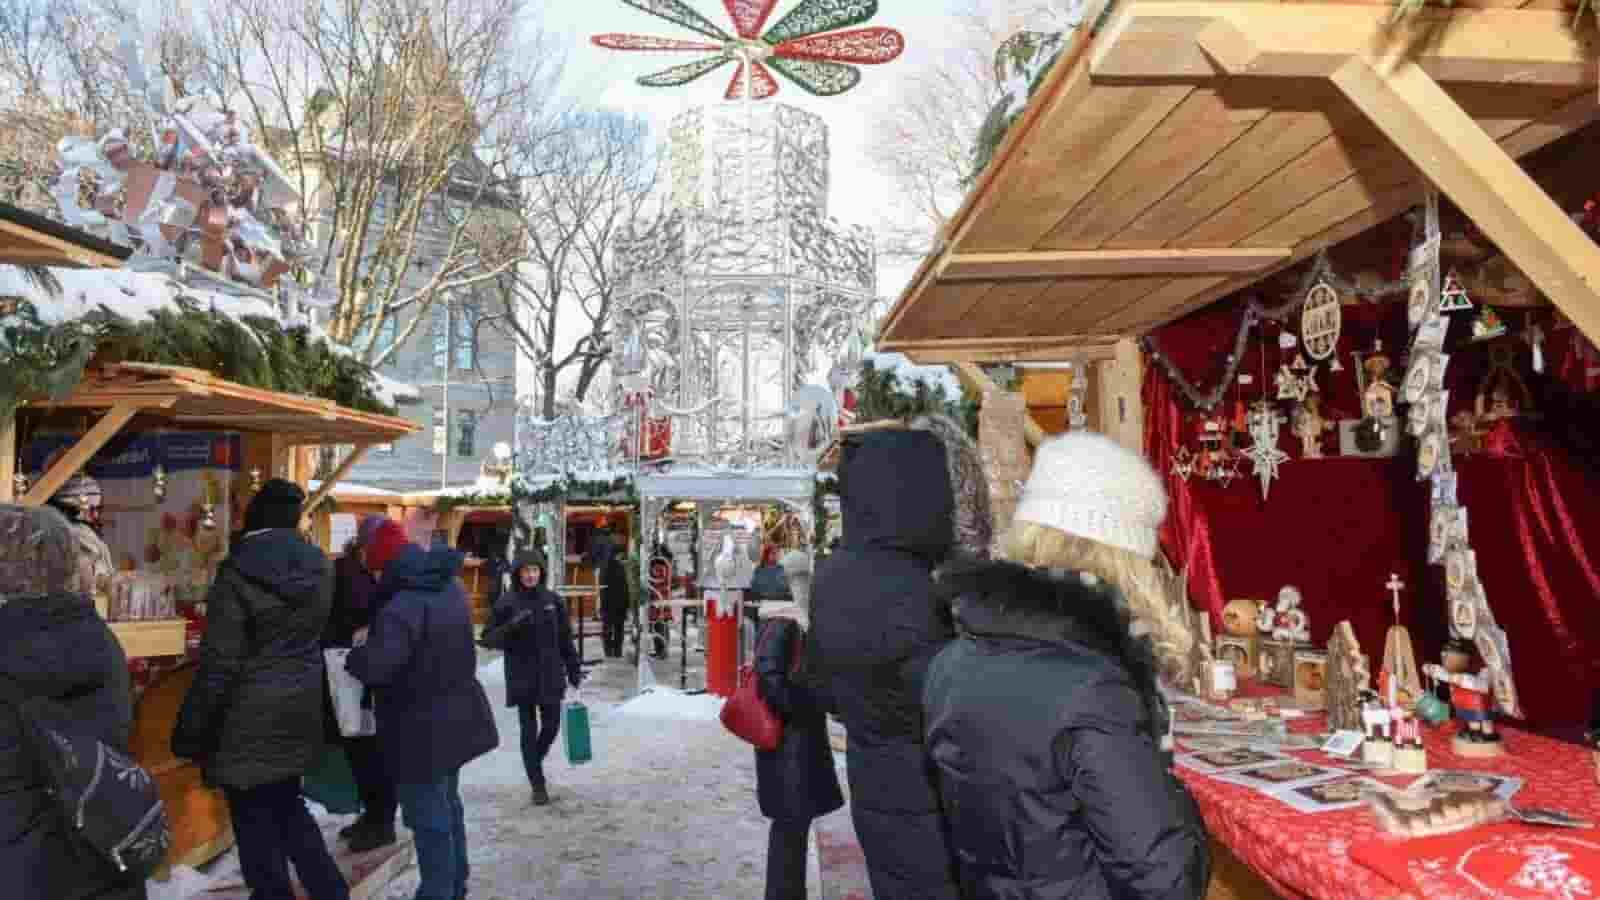 Khu chợ giáng sinh trung tâm thành phố Quebec